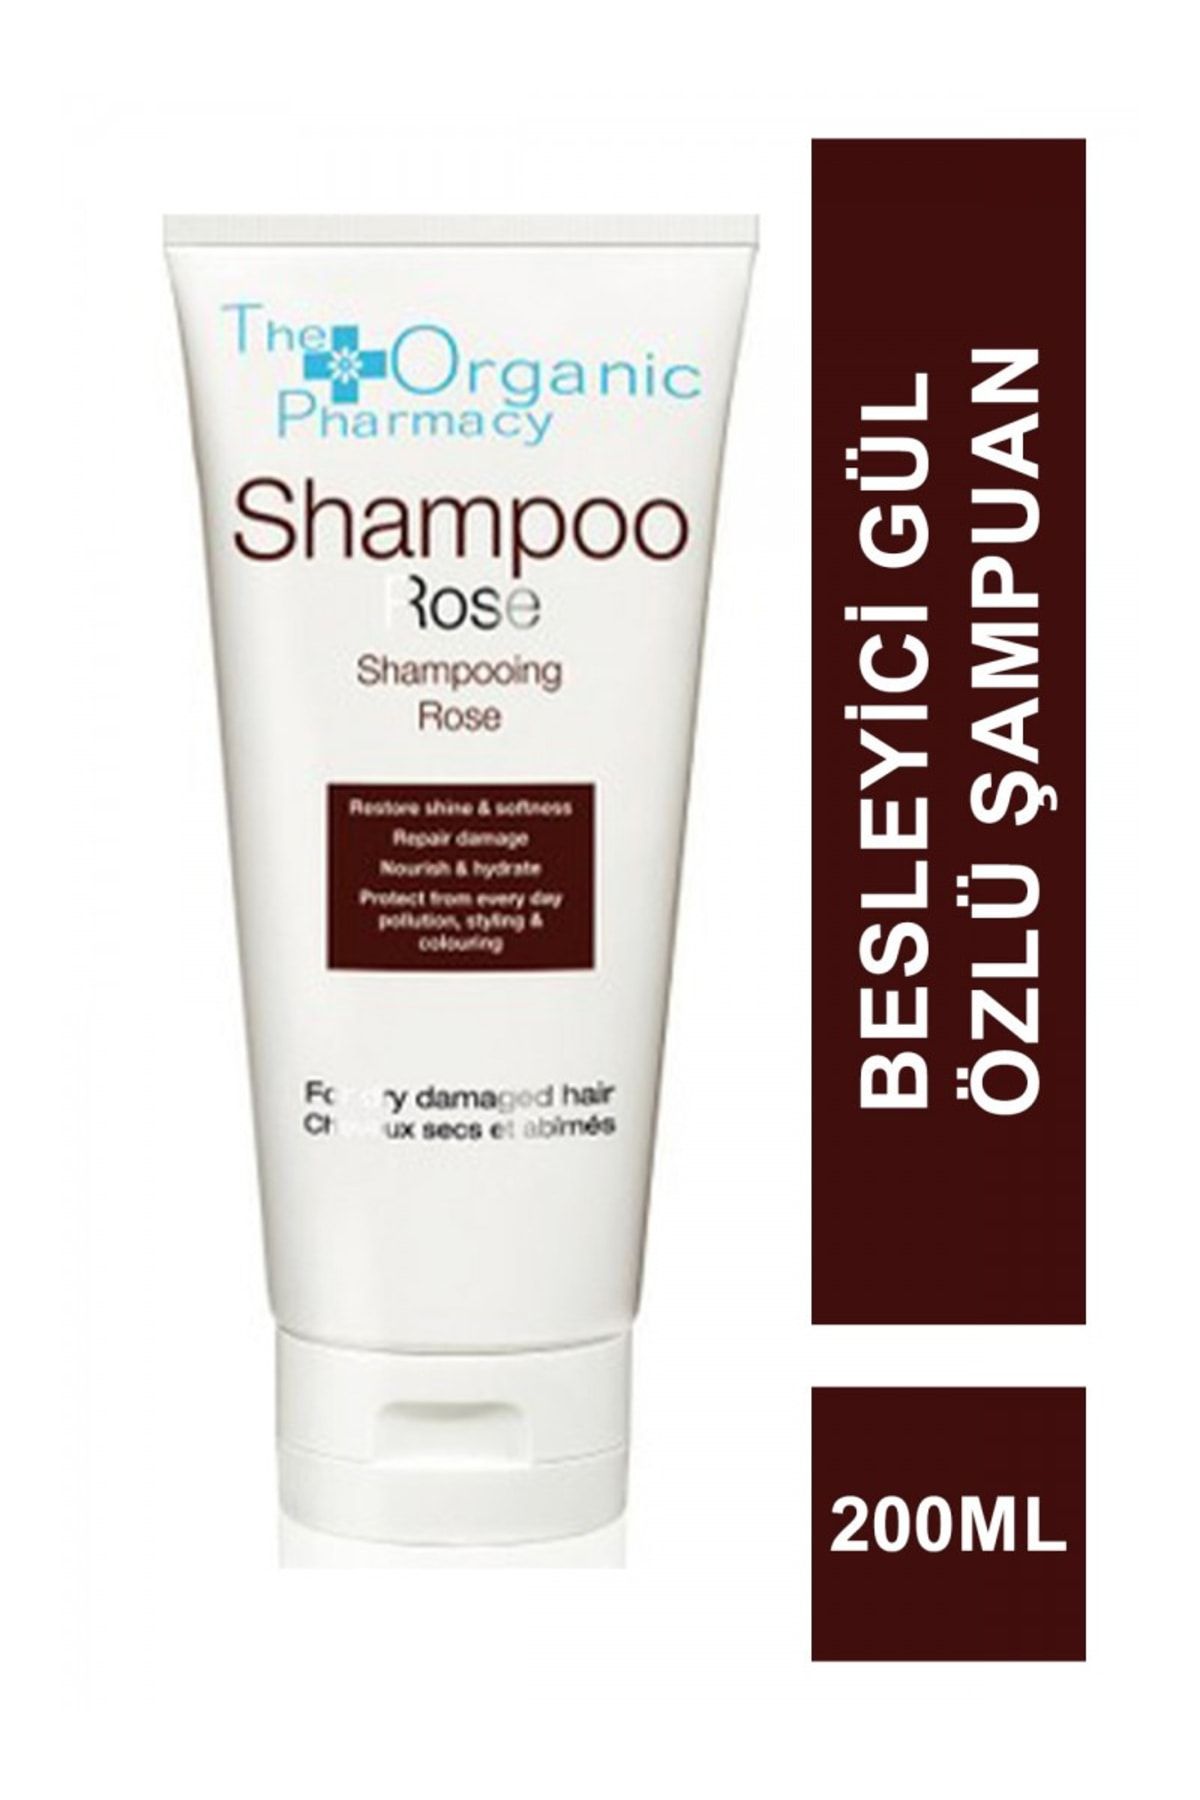 The Organic Pharmacy Rose Shampoo - Güçlendirici Ve Parlaklık Verici Gül Özlü Organik Şampuan 200 Ml